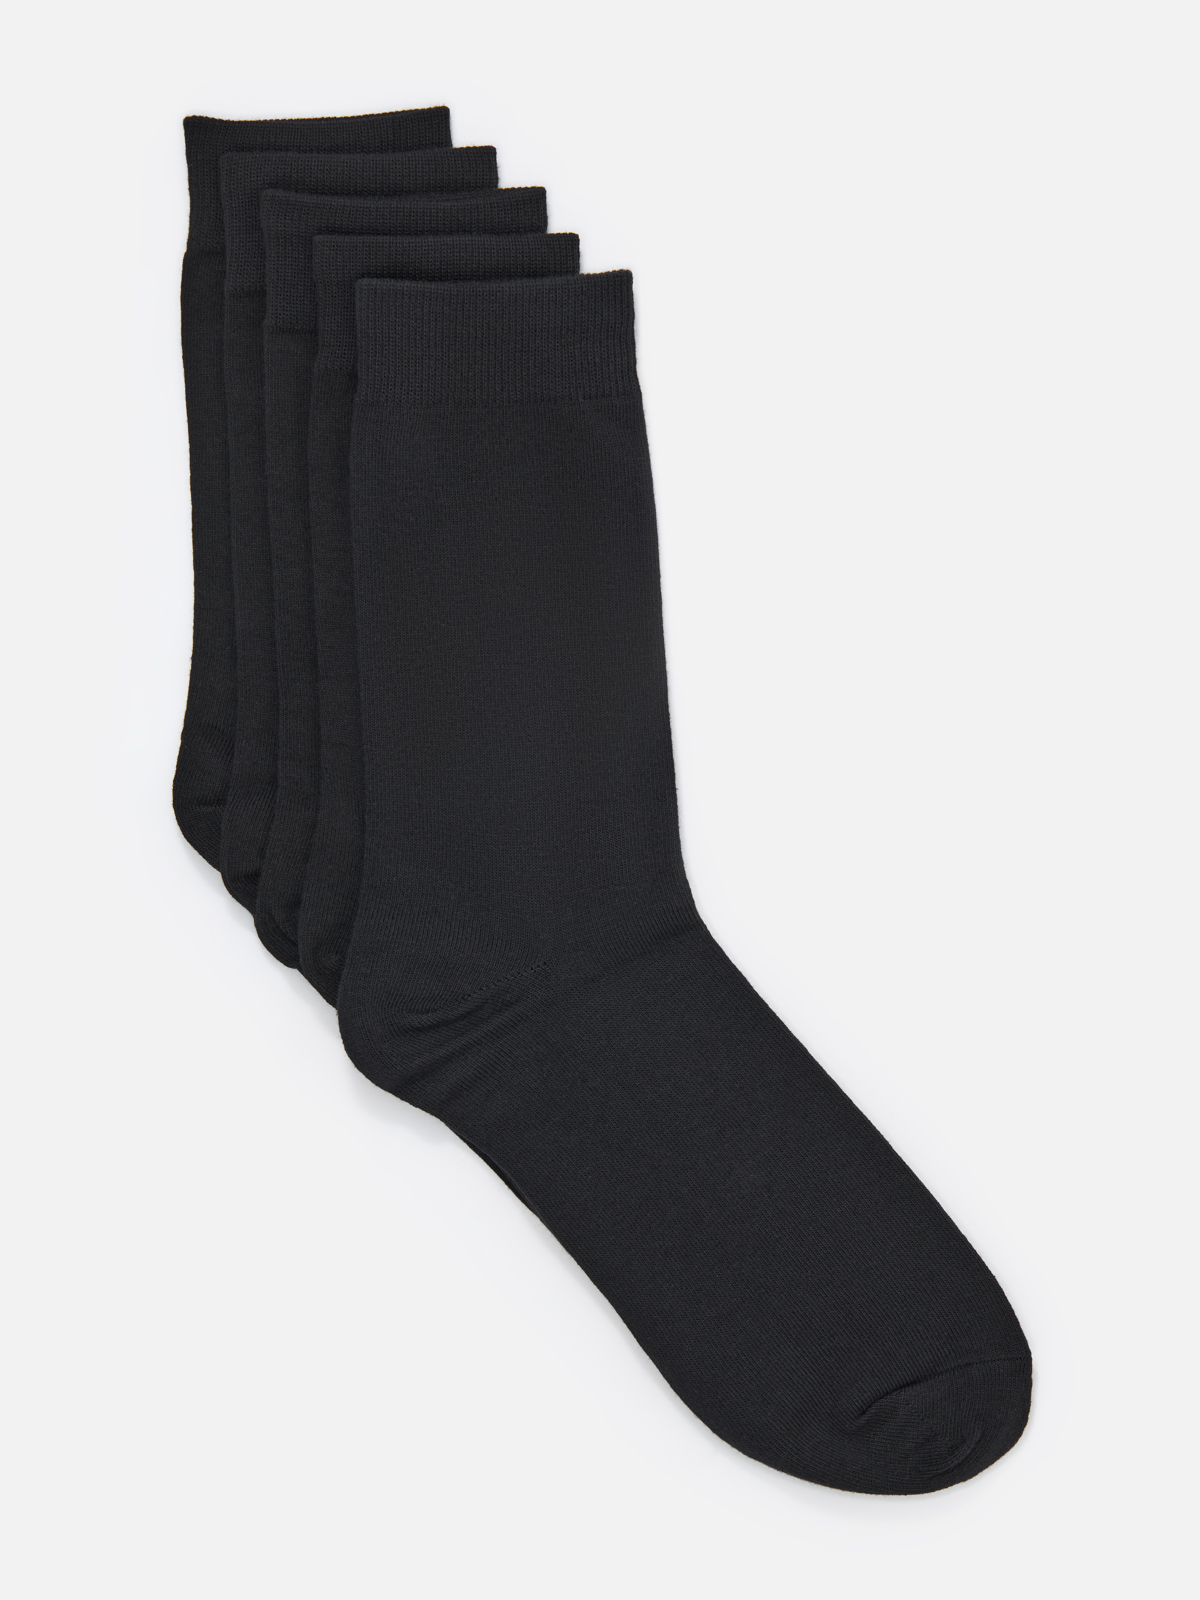 Комплект носков мужских Cotton & Quality 53001Т5 черных 43-46